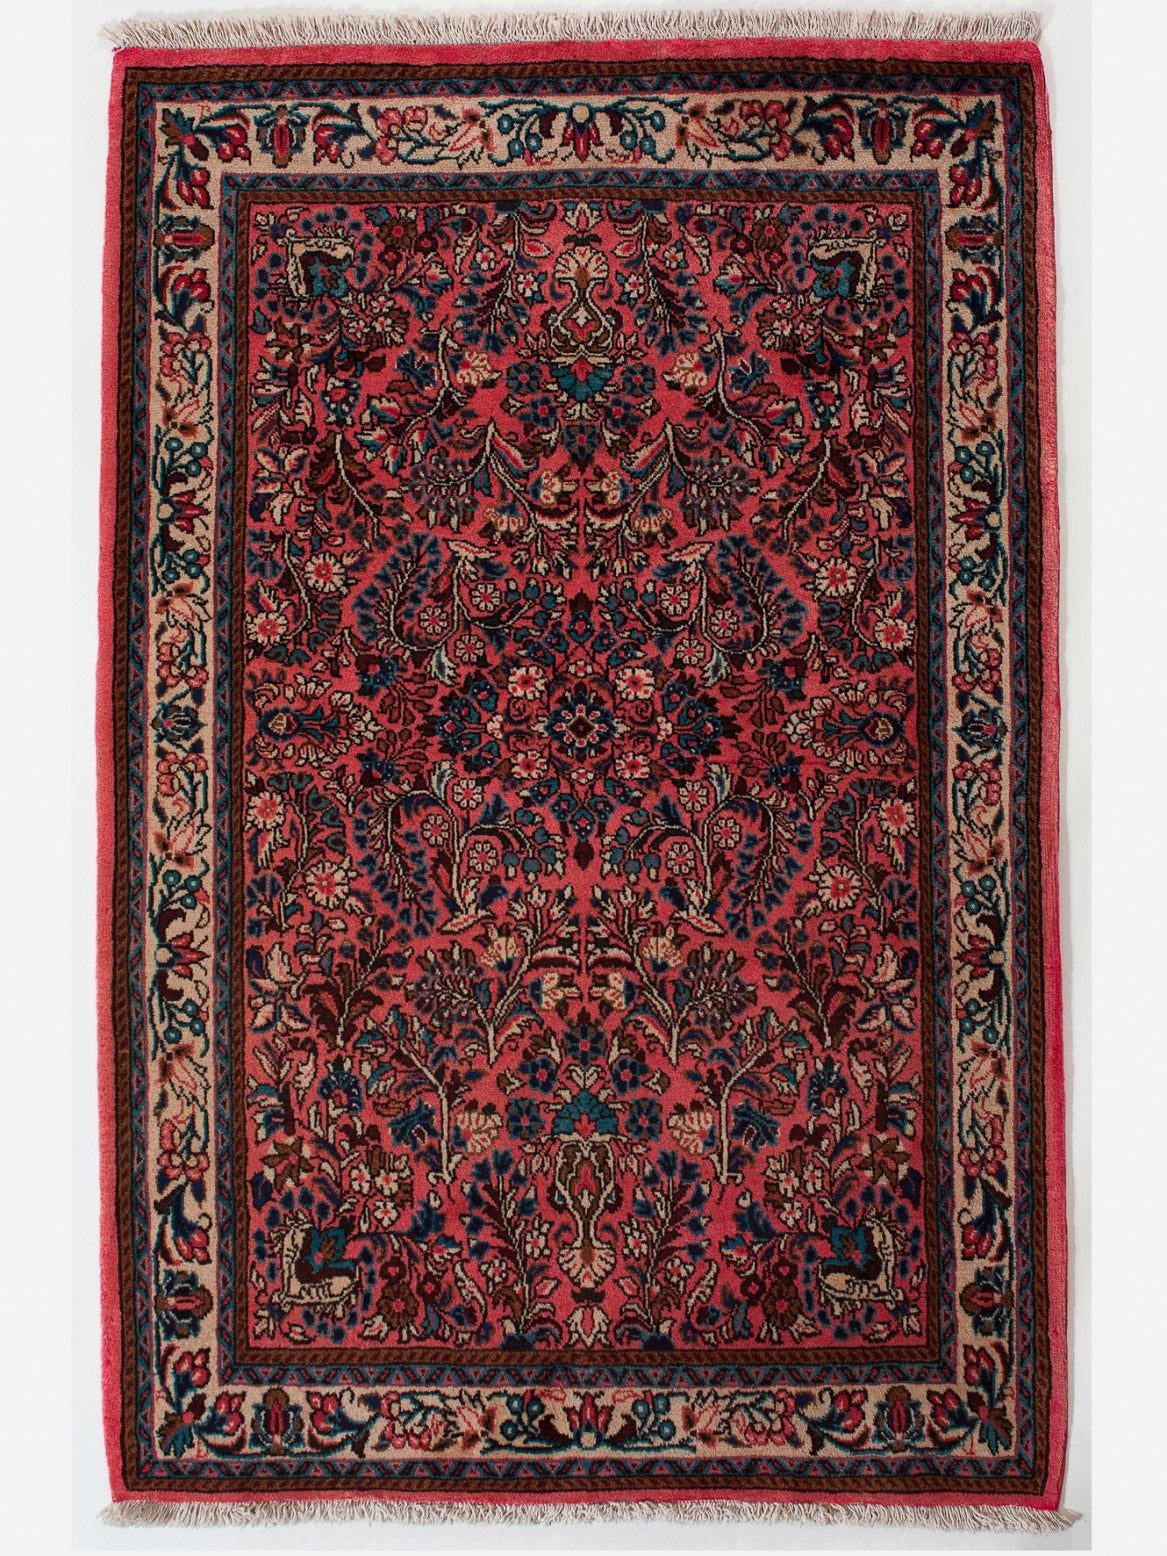 SARUGH IRAN 162 x 103 cm